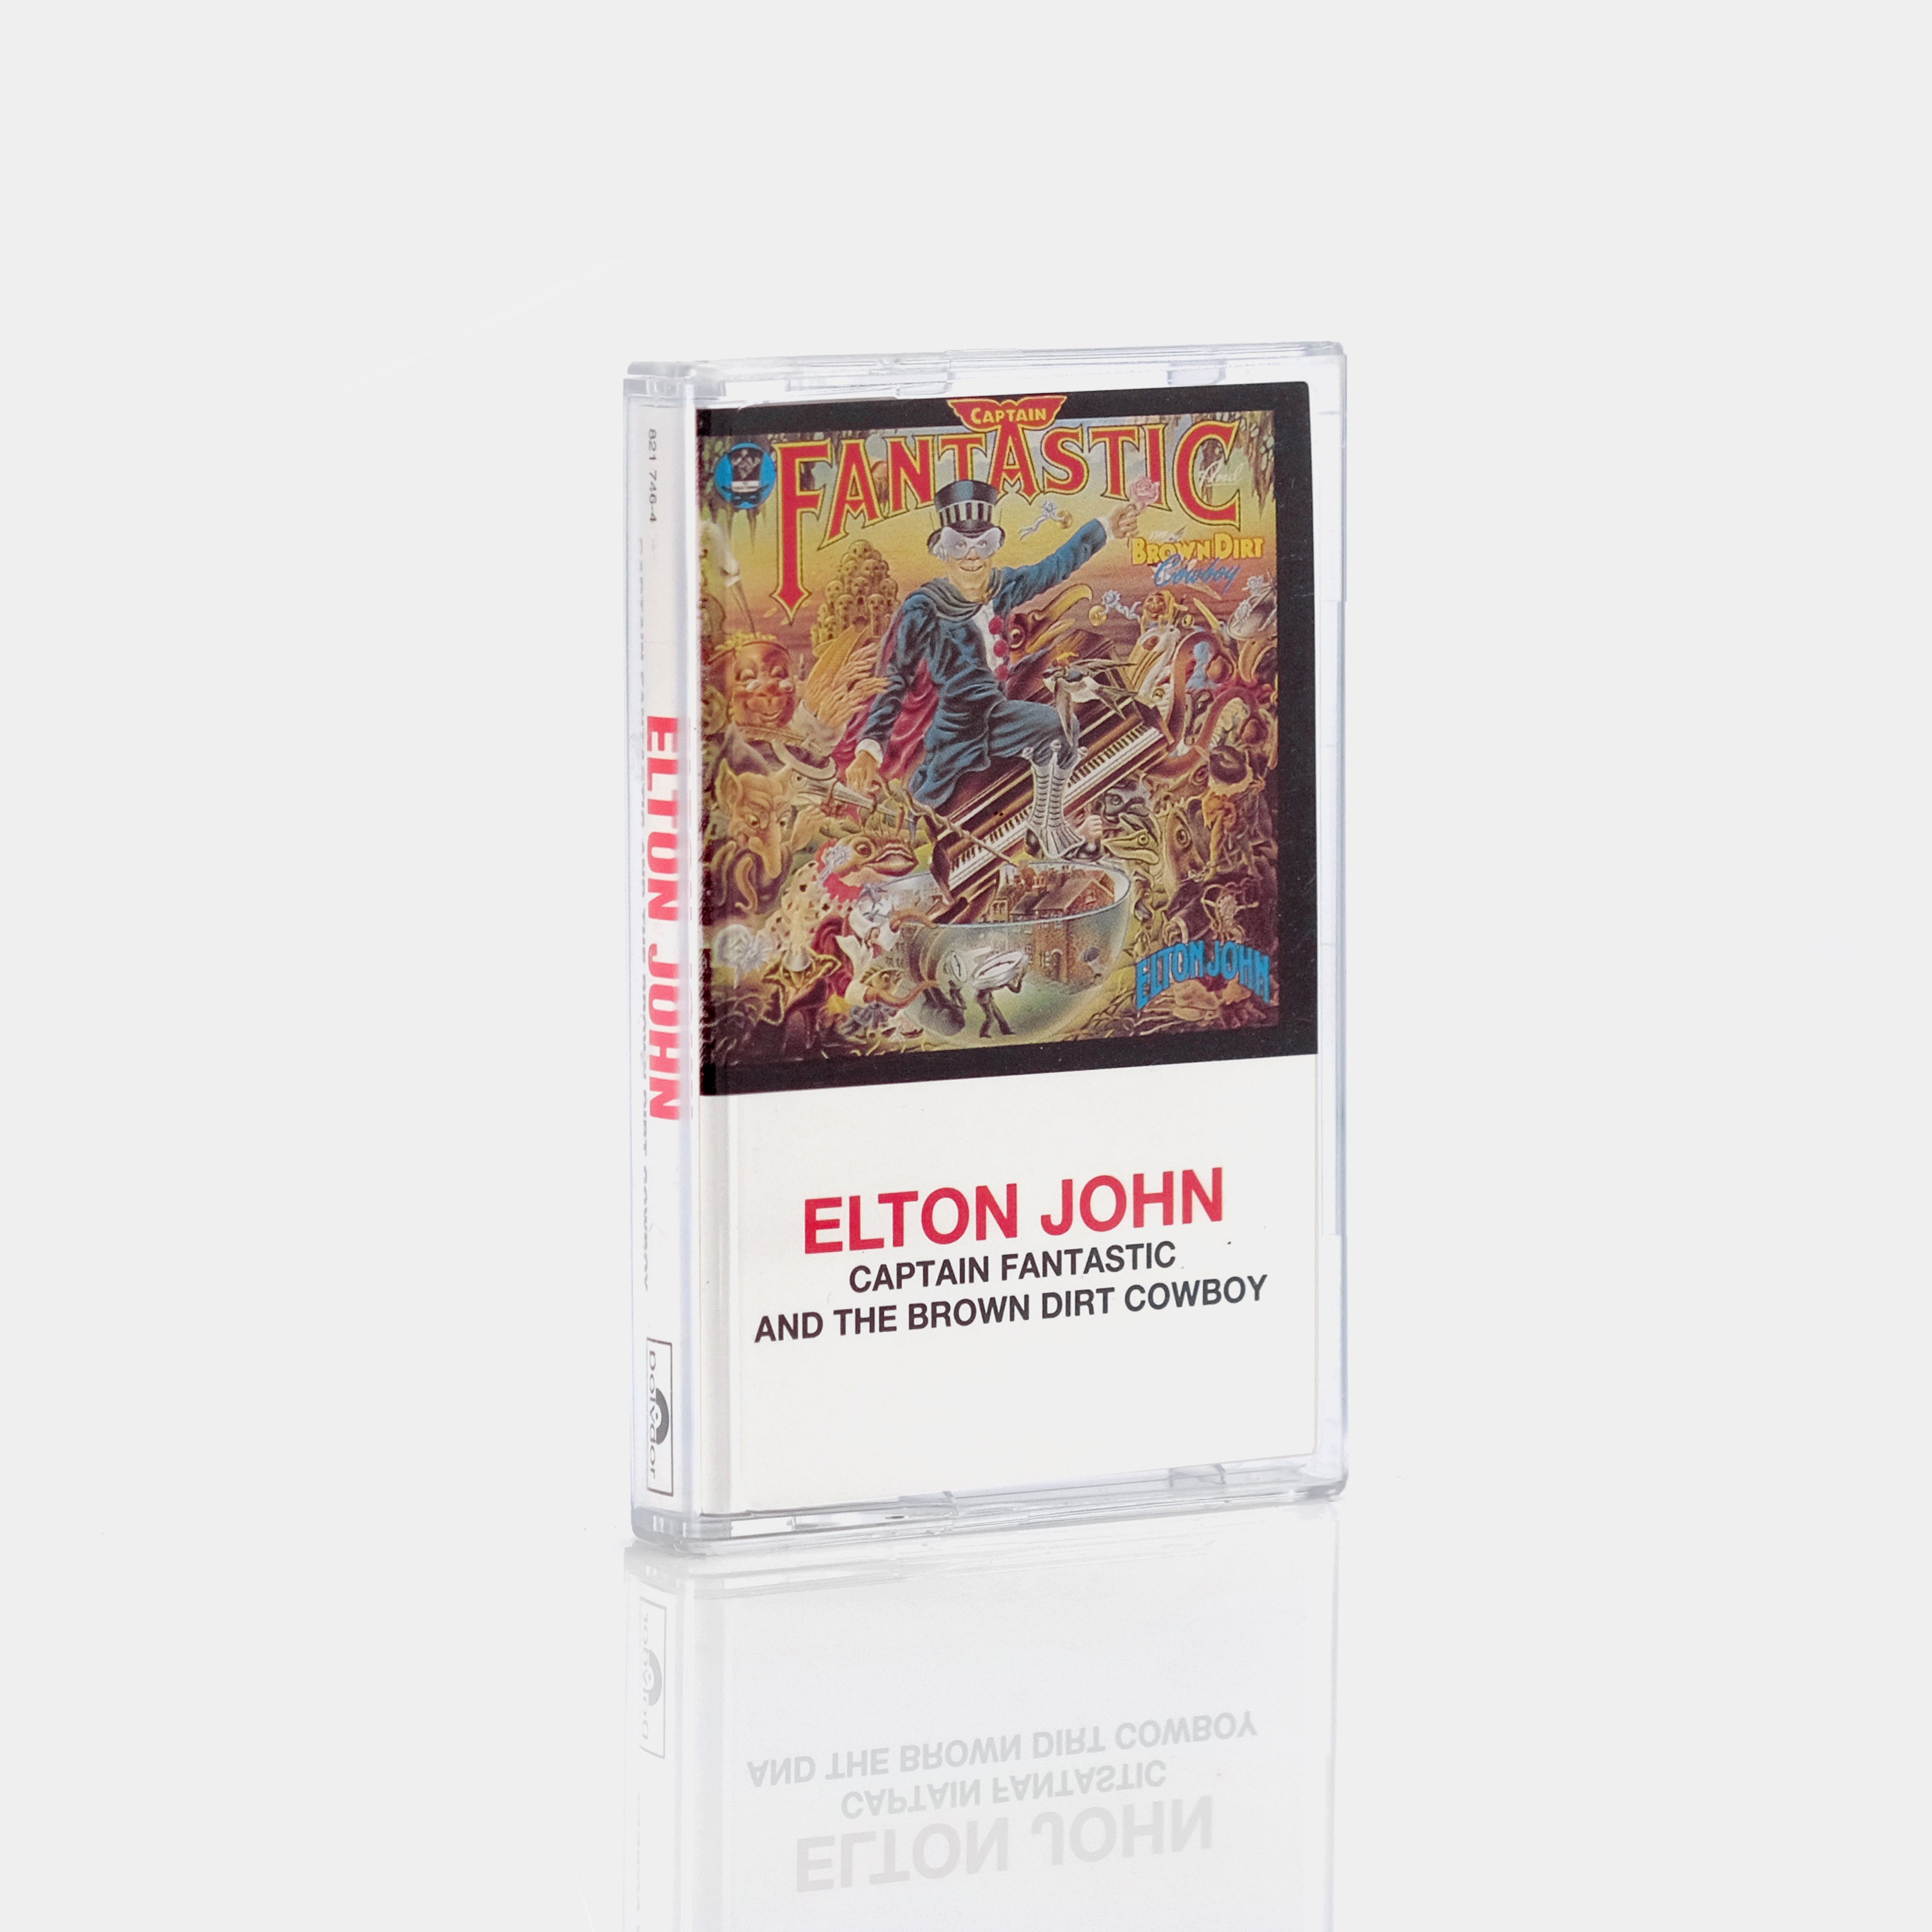 Elton John - Captain Fantastic And The Brown Dirt Cowboy Cassette Tape